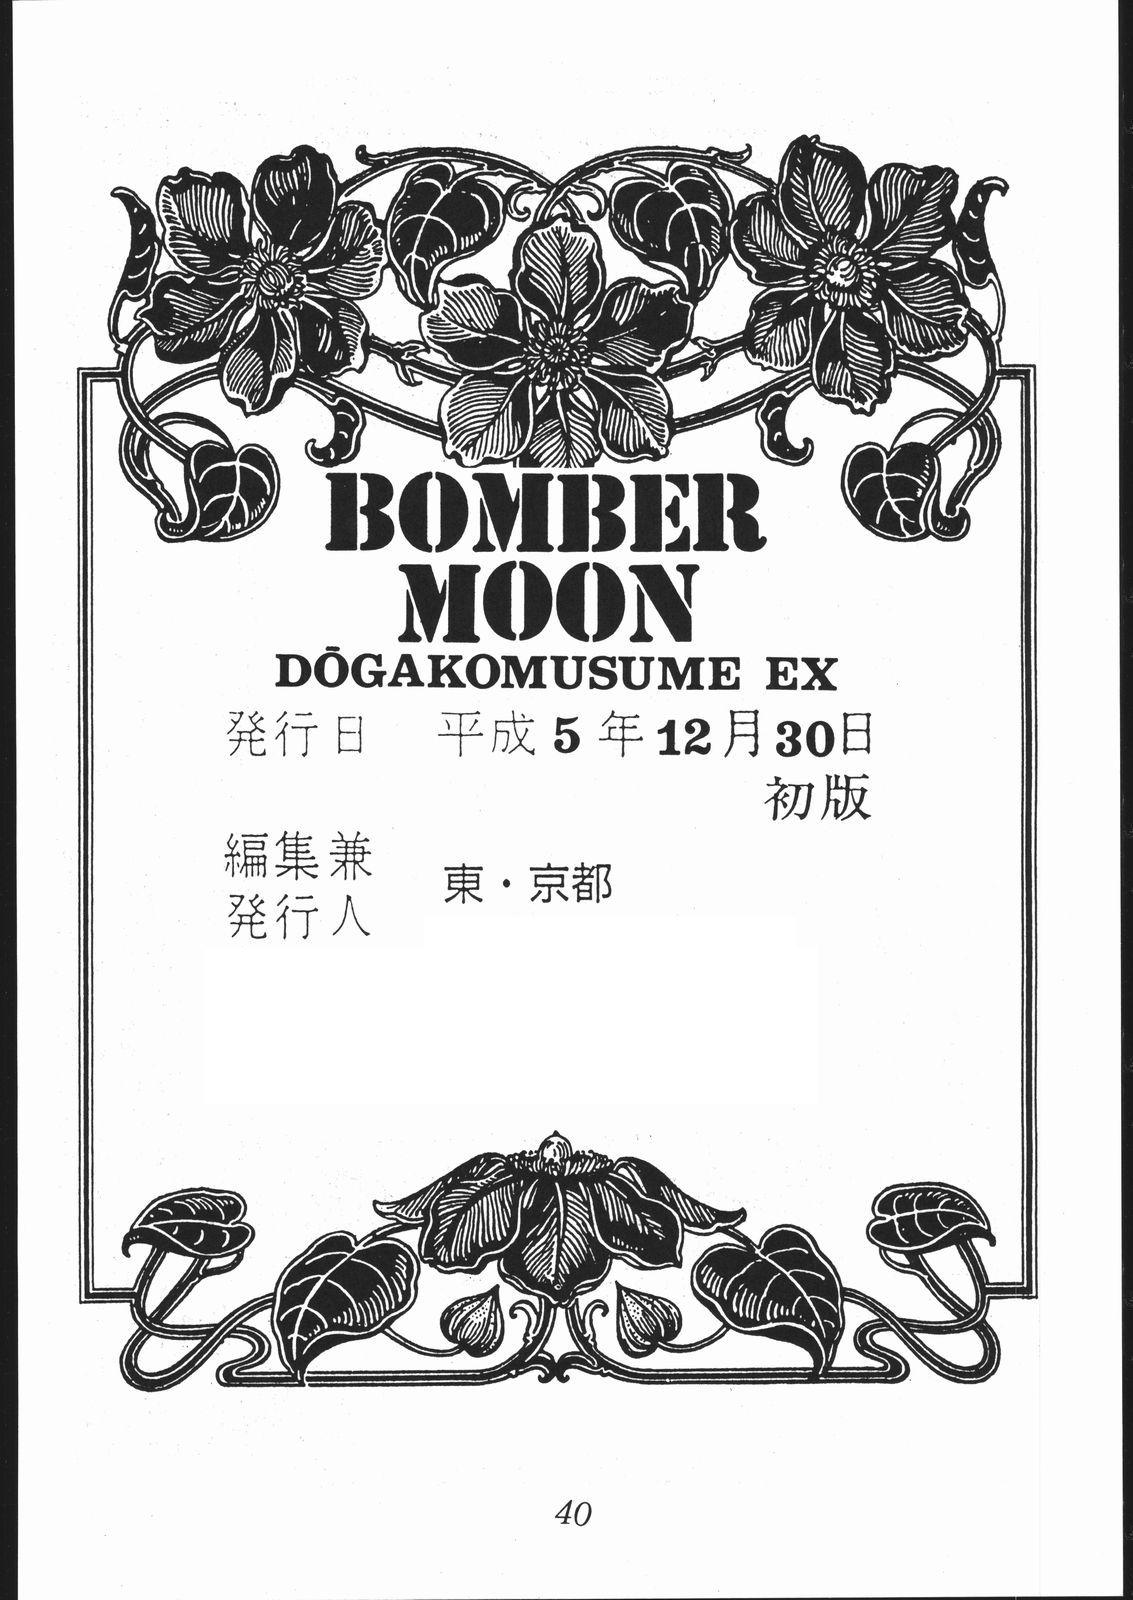 DOGAKOMUSUME EX BOMBER MOON 40